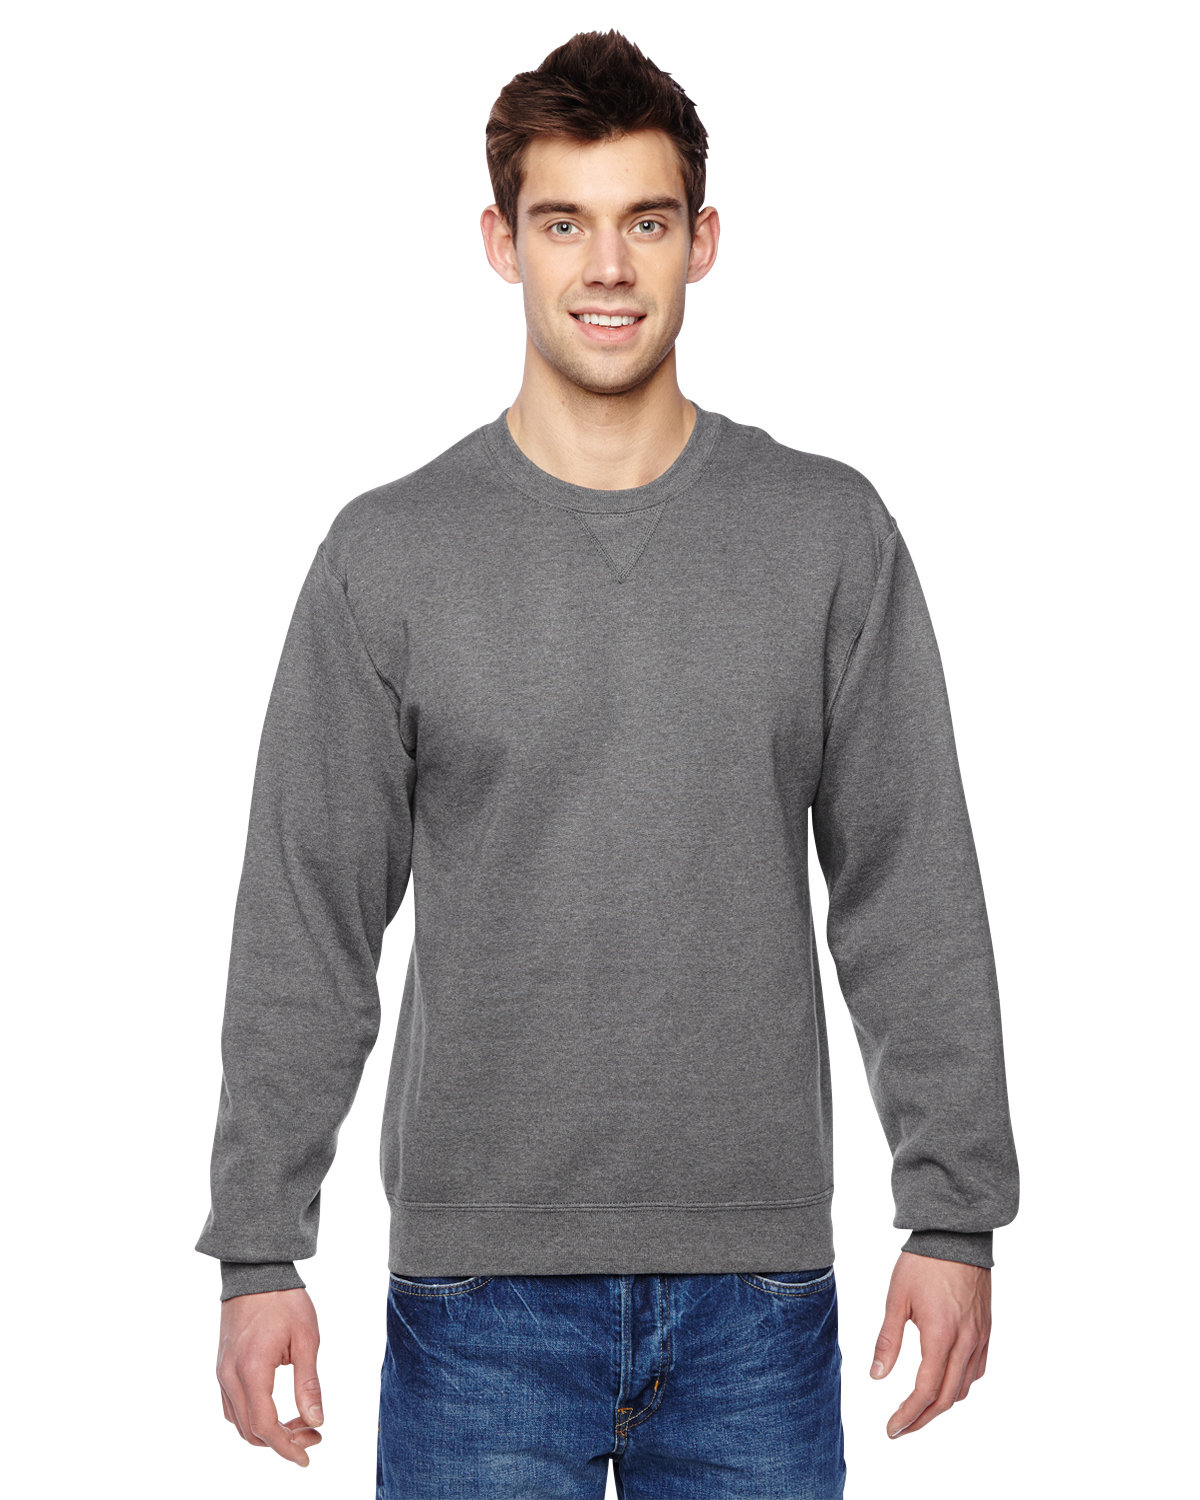 Men's Fleece Crew Sweatshirt - image 1 of 3